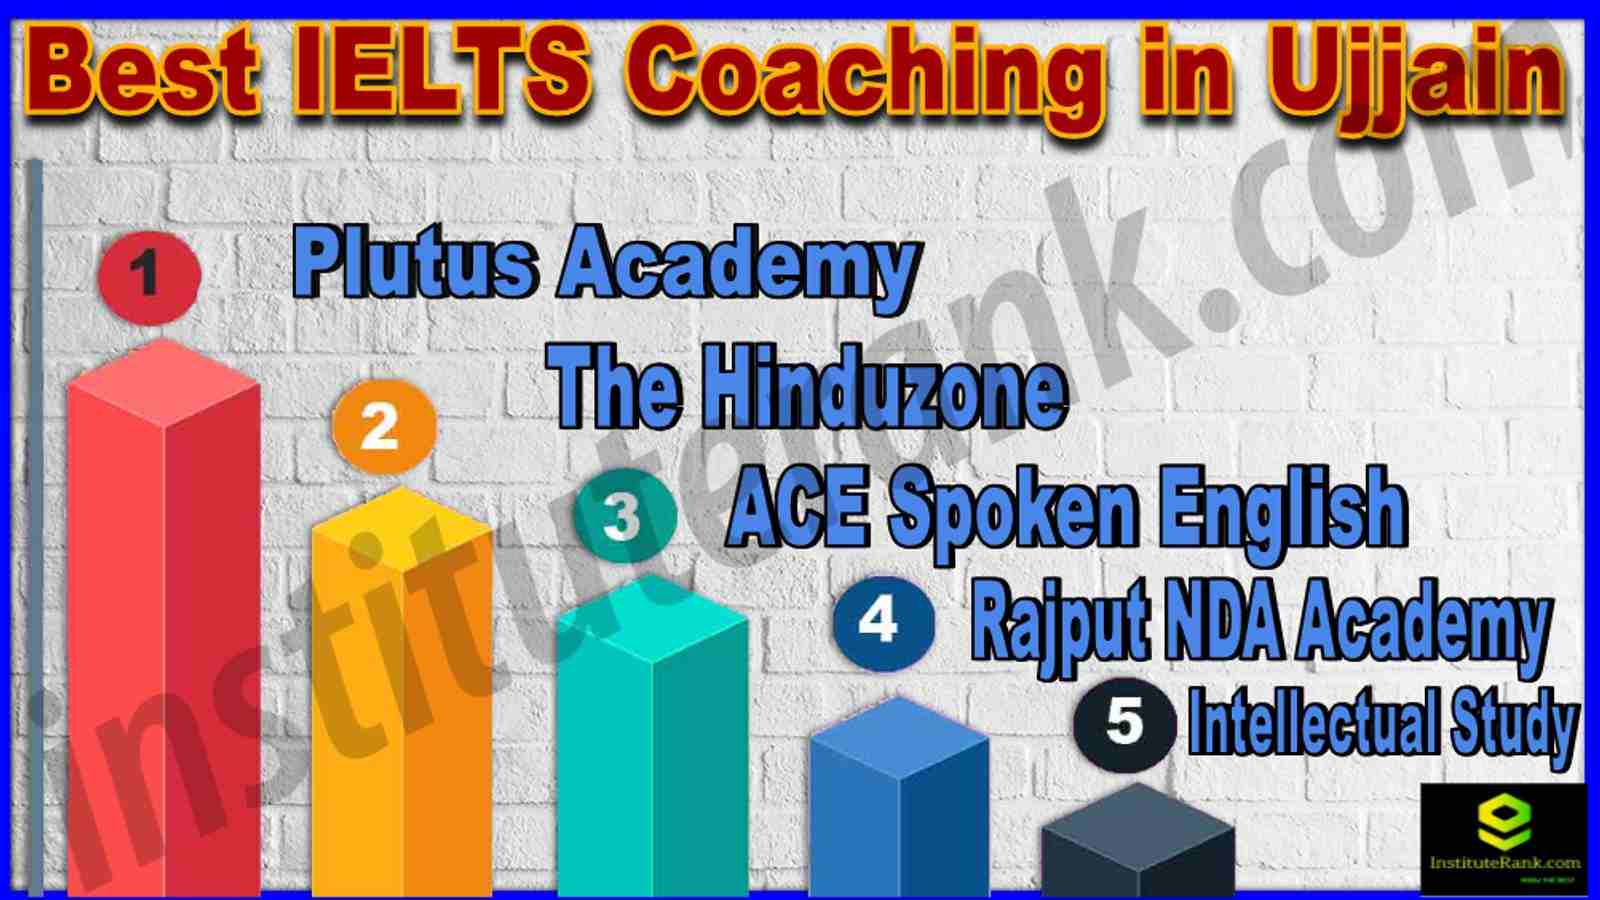 Best IELTS Coaching in Ujjain